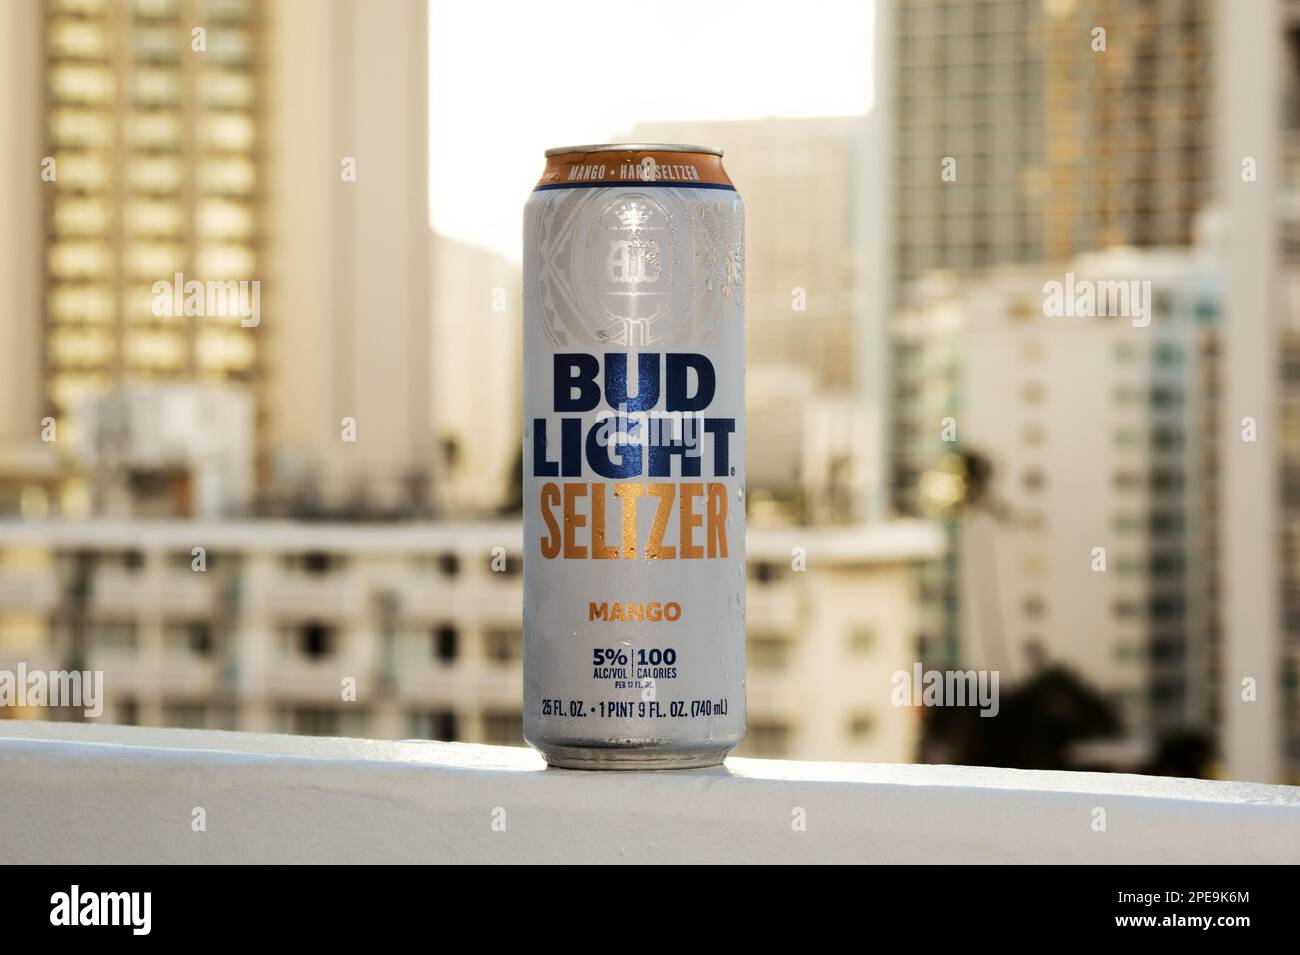 Honolulu, Hawaii - 27. April 2020: Produktfoto von Bud light Seltzer Mango Aroma 25 oz. Dose auf Balkon mit Blick auf die Stadt im Hintergrund. Stockfoto